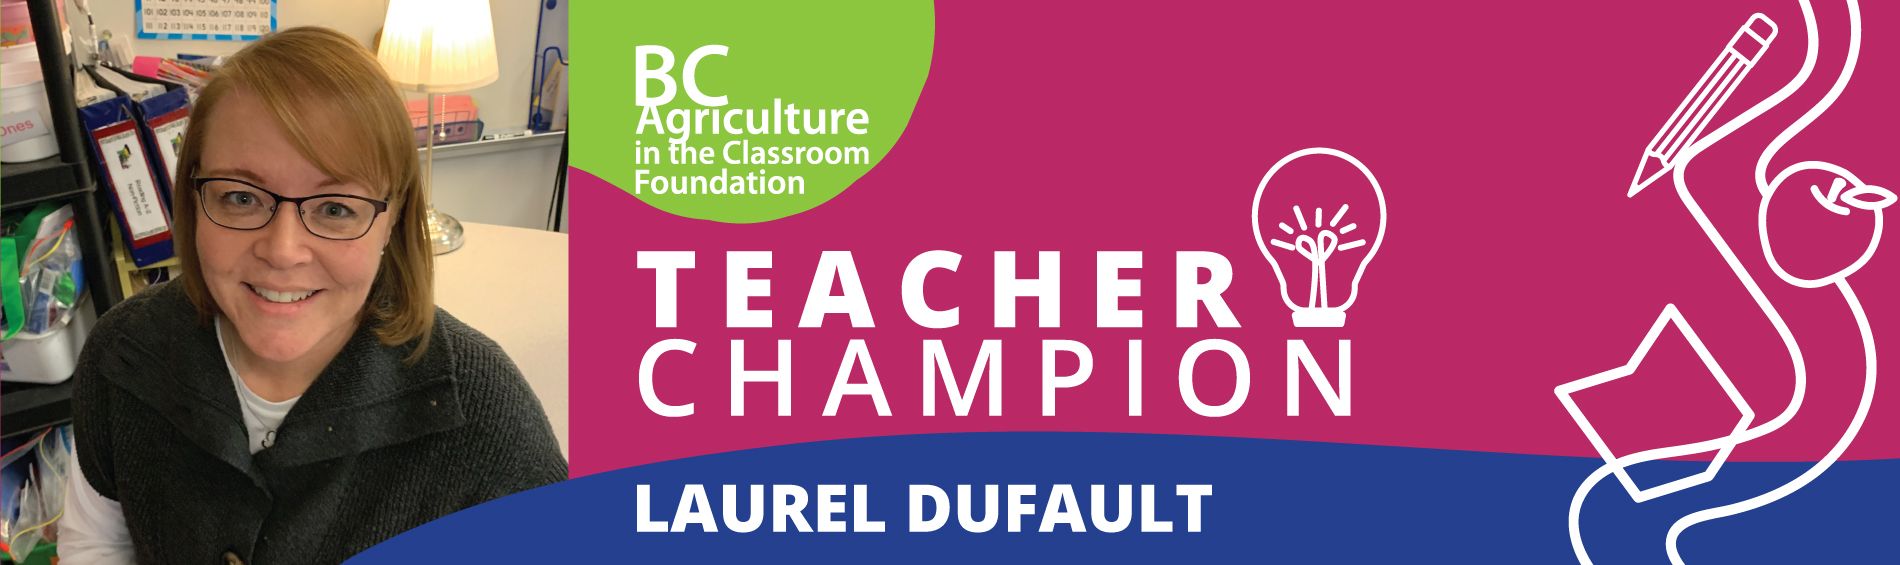 Teacher Champion - Laurel Dufault